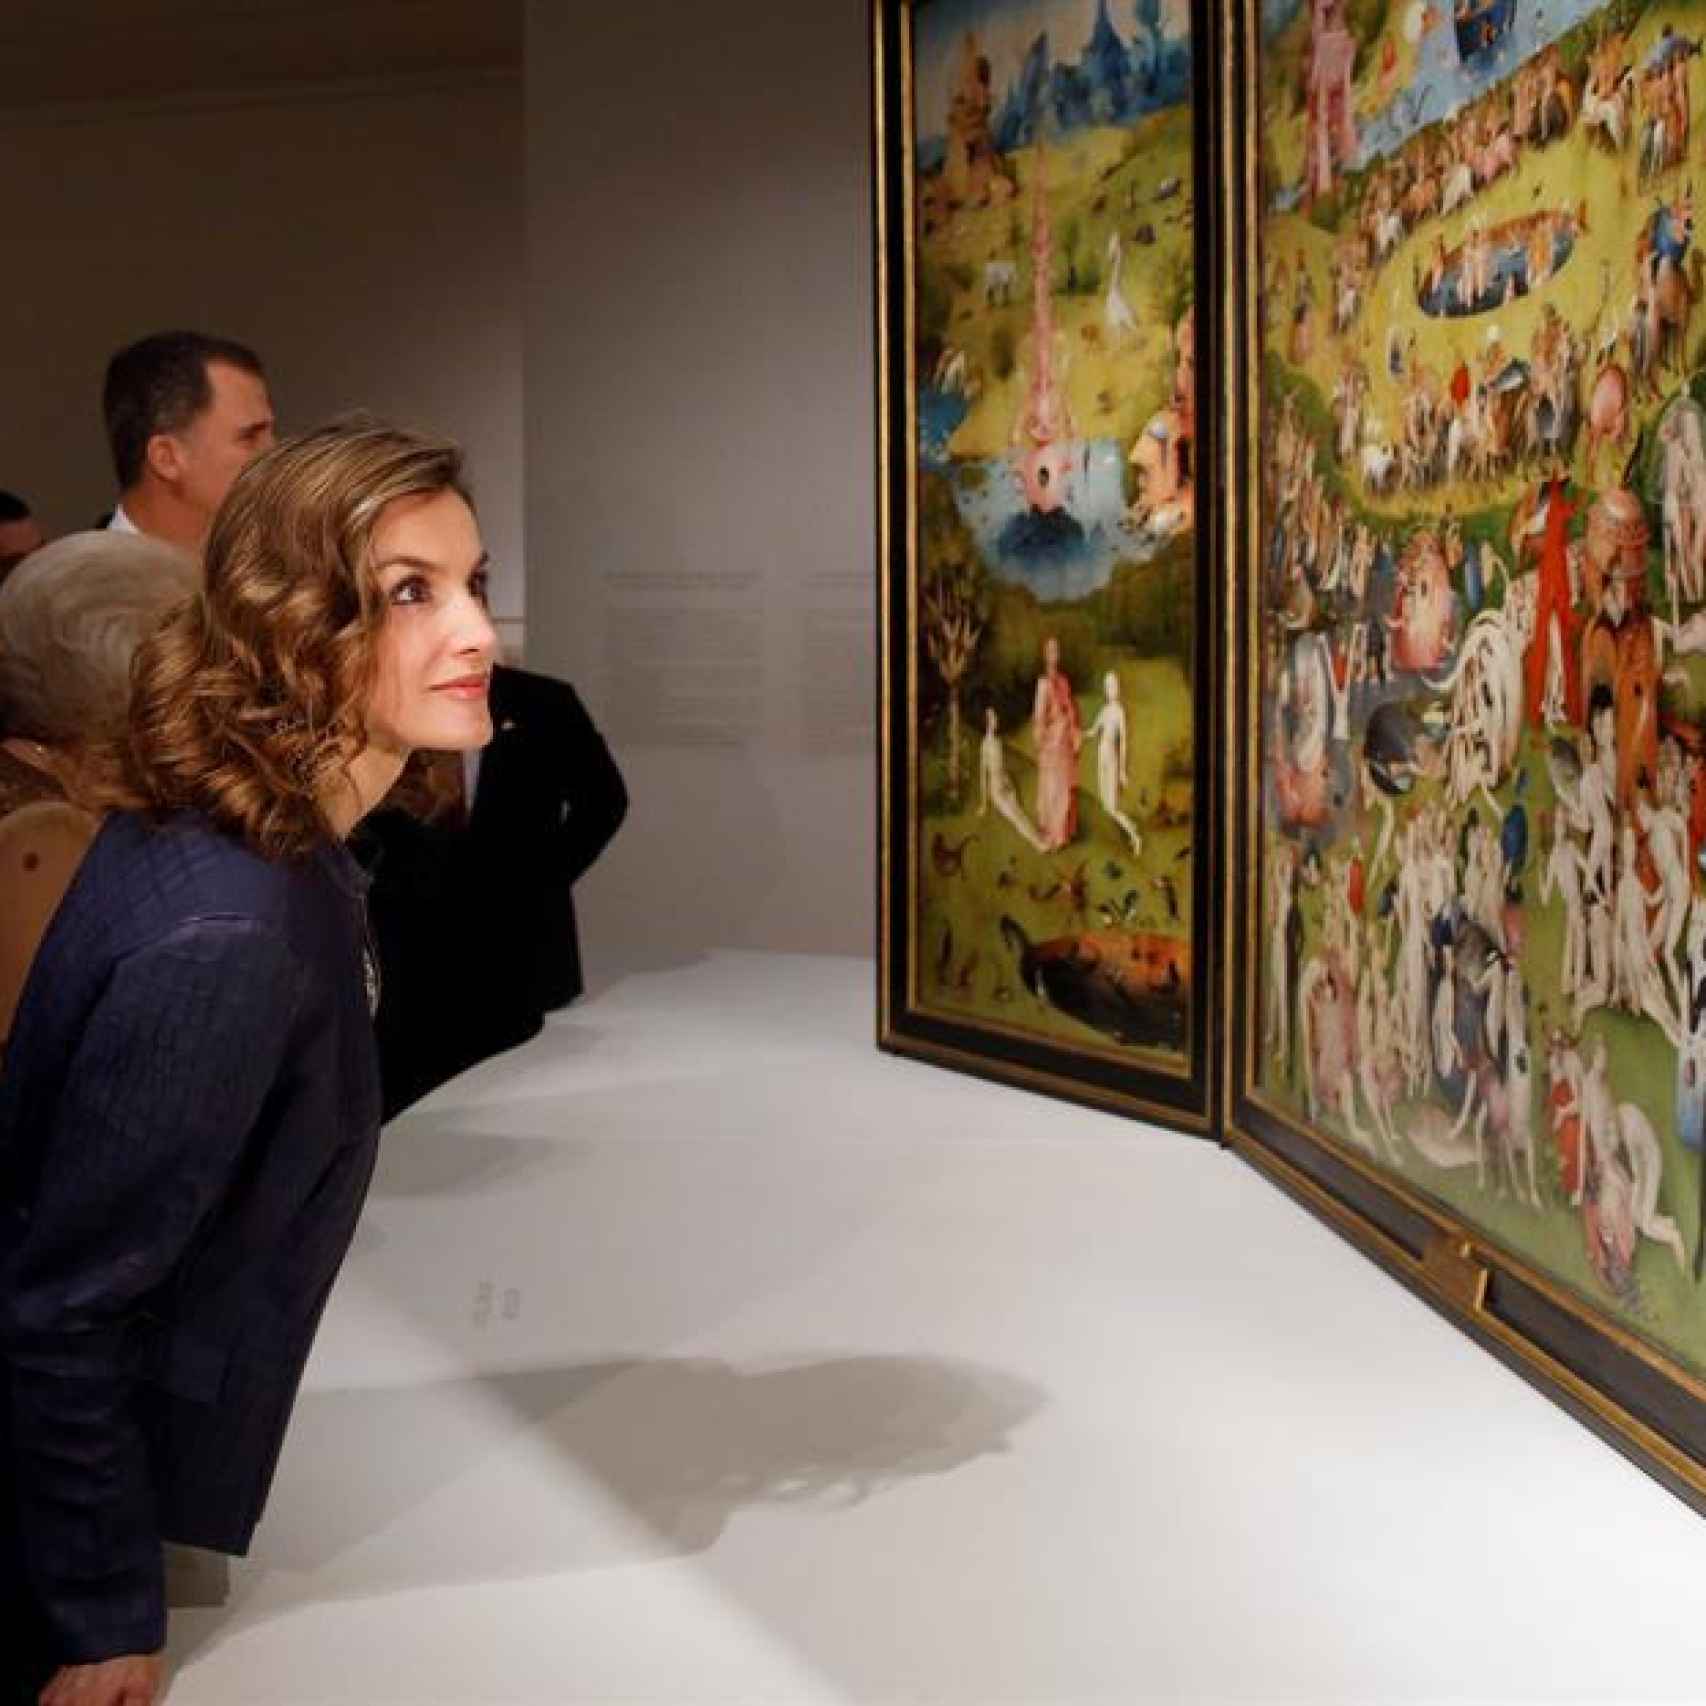 La reina observa el tríptico de El jardín de las delicias, en la exposición del Prado.